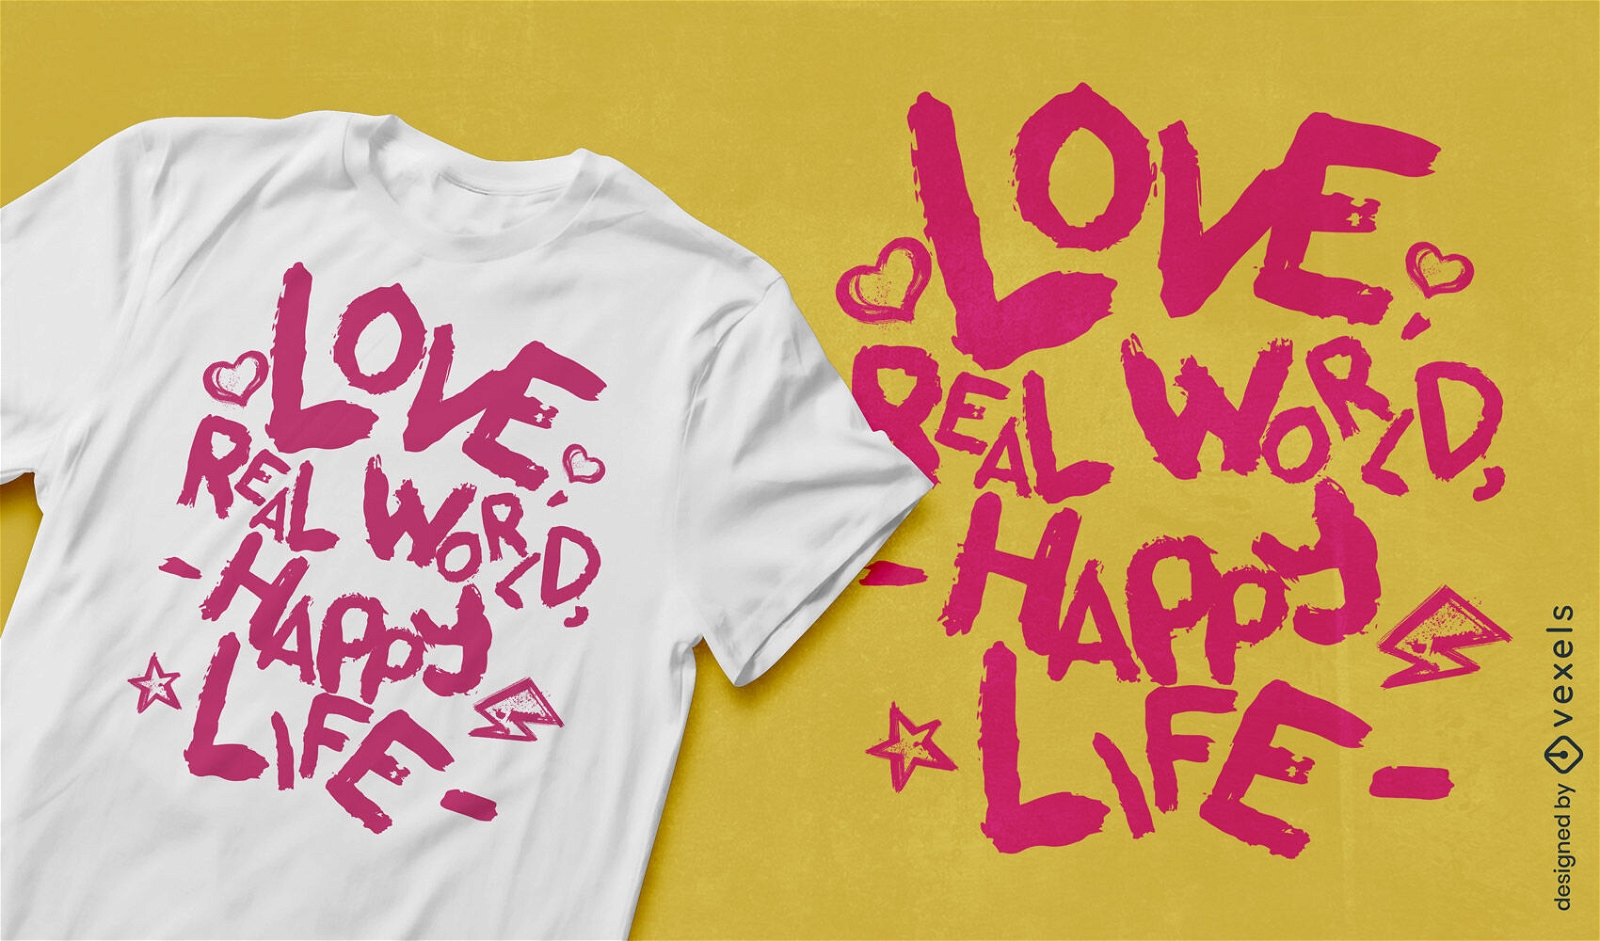 Dise?o de camiseta con cita de amor rom?ntica y optimista.